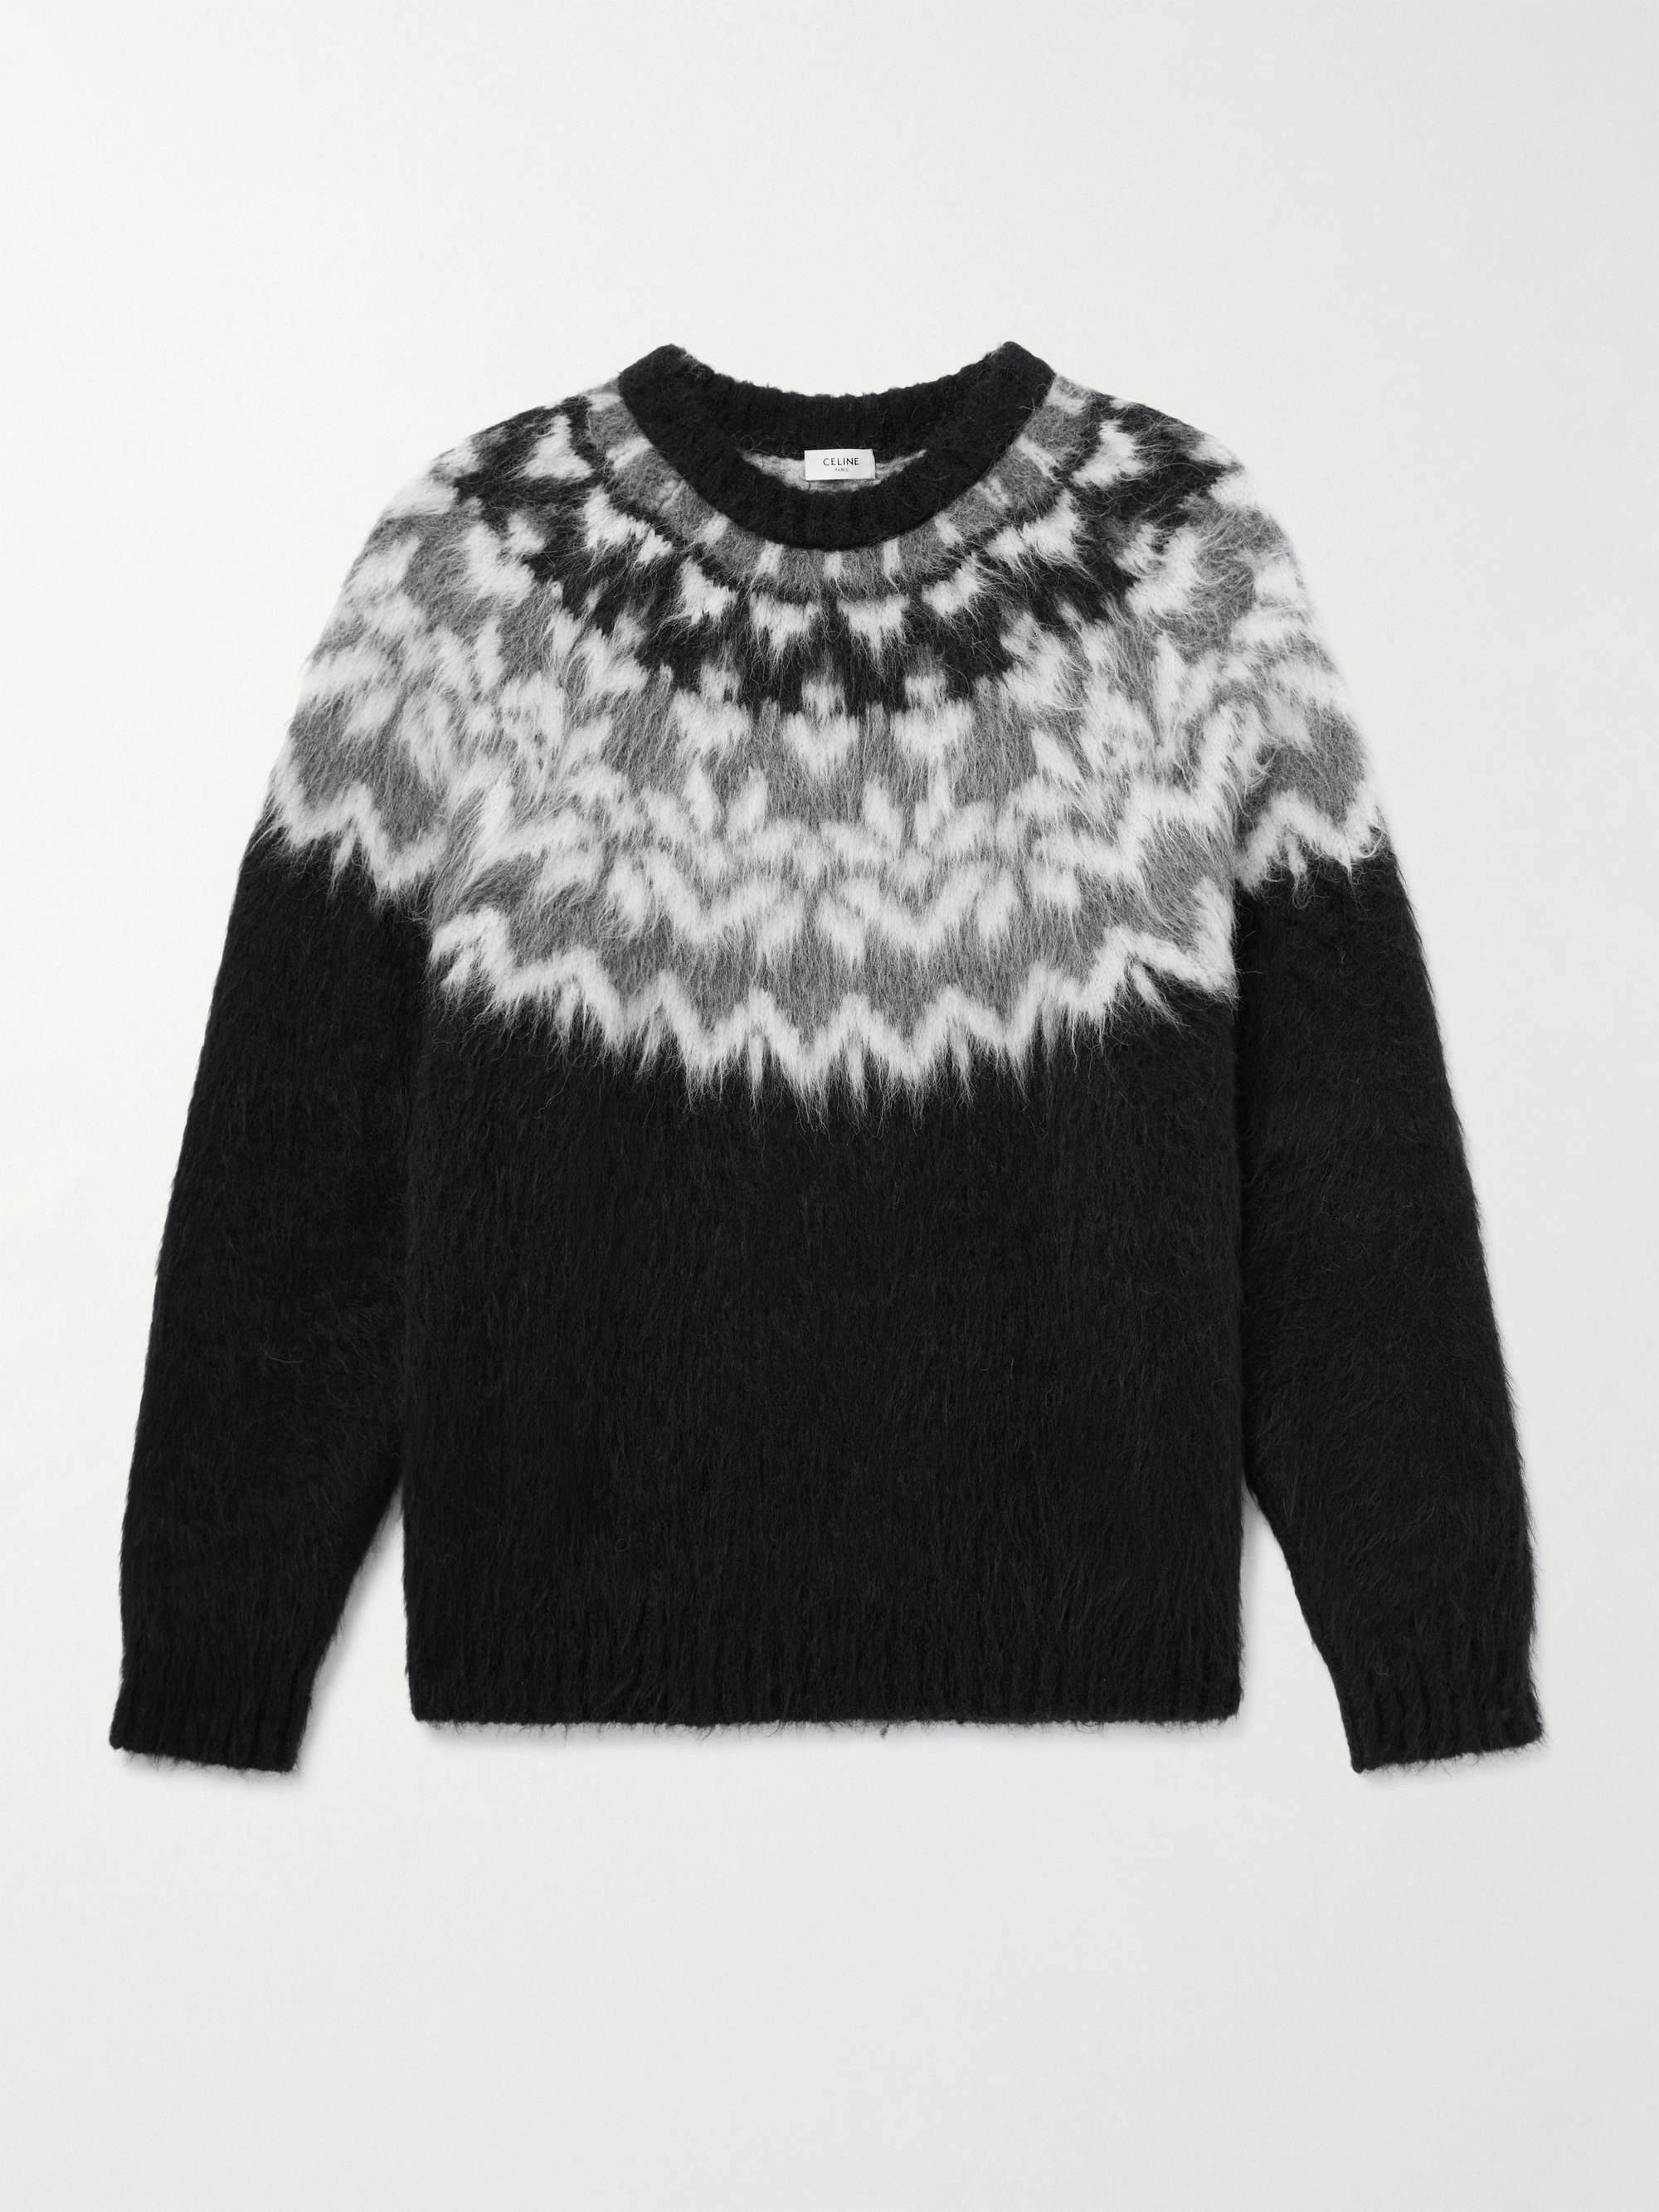 셀린느 옴므 페어아일 브러쉬드 알파카 스웨터 CELINE HOMME Fair Isle Brushed Alpaca-Blend Sweater,Black